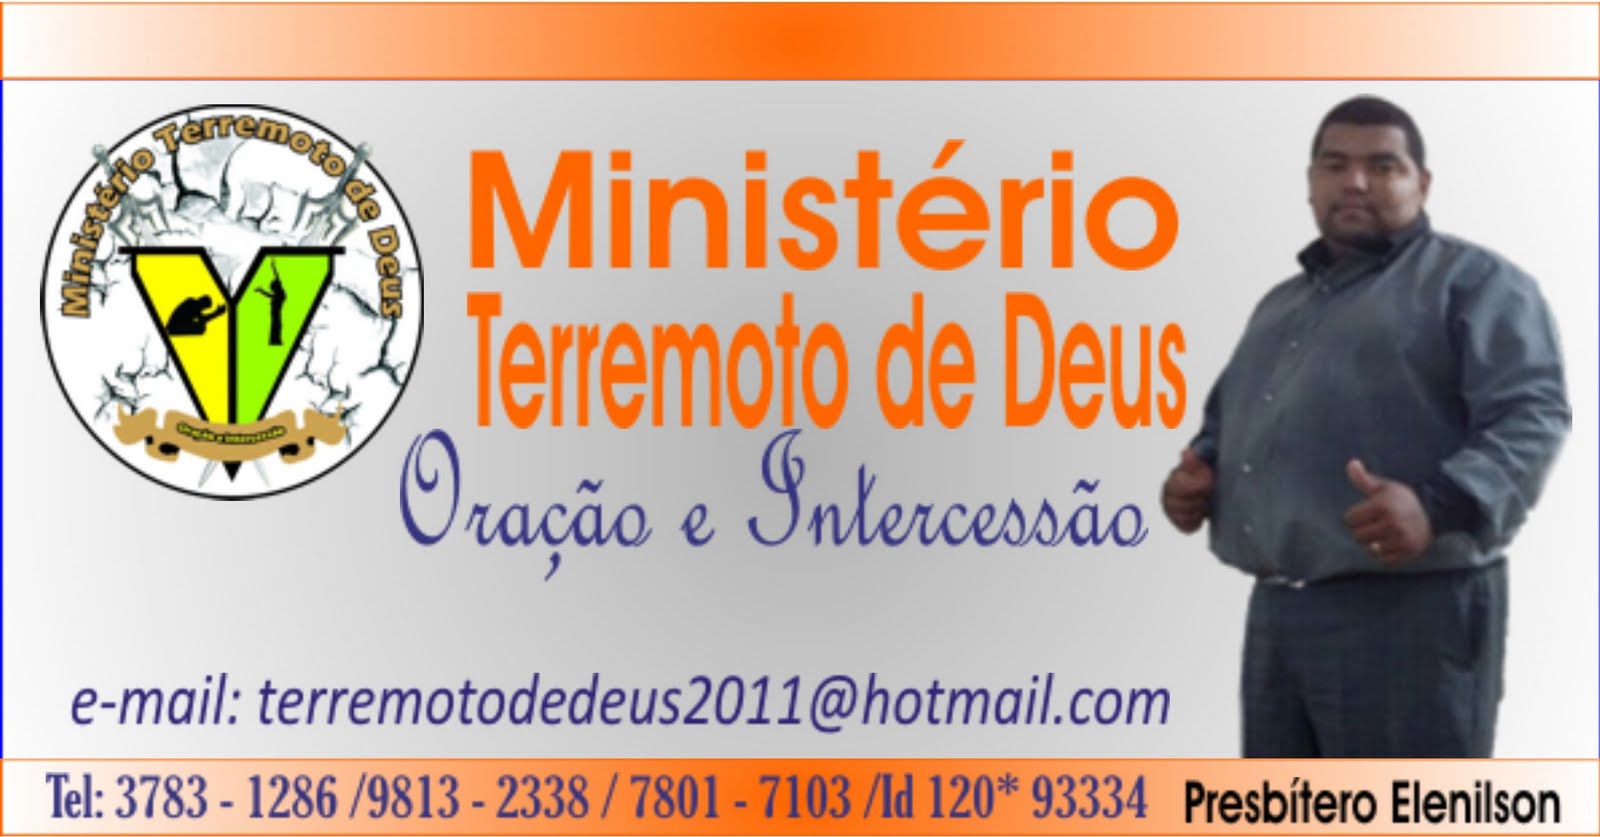 MINISTÉRIO TERREMOTO DE DEUS